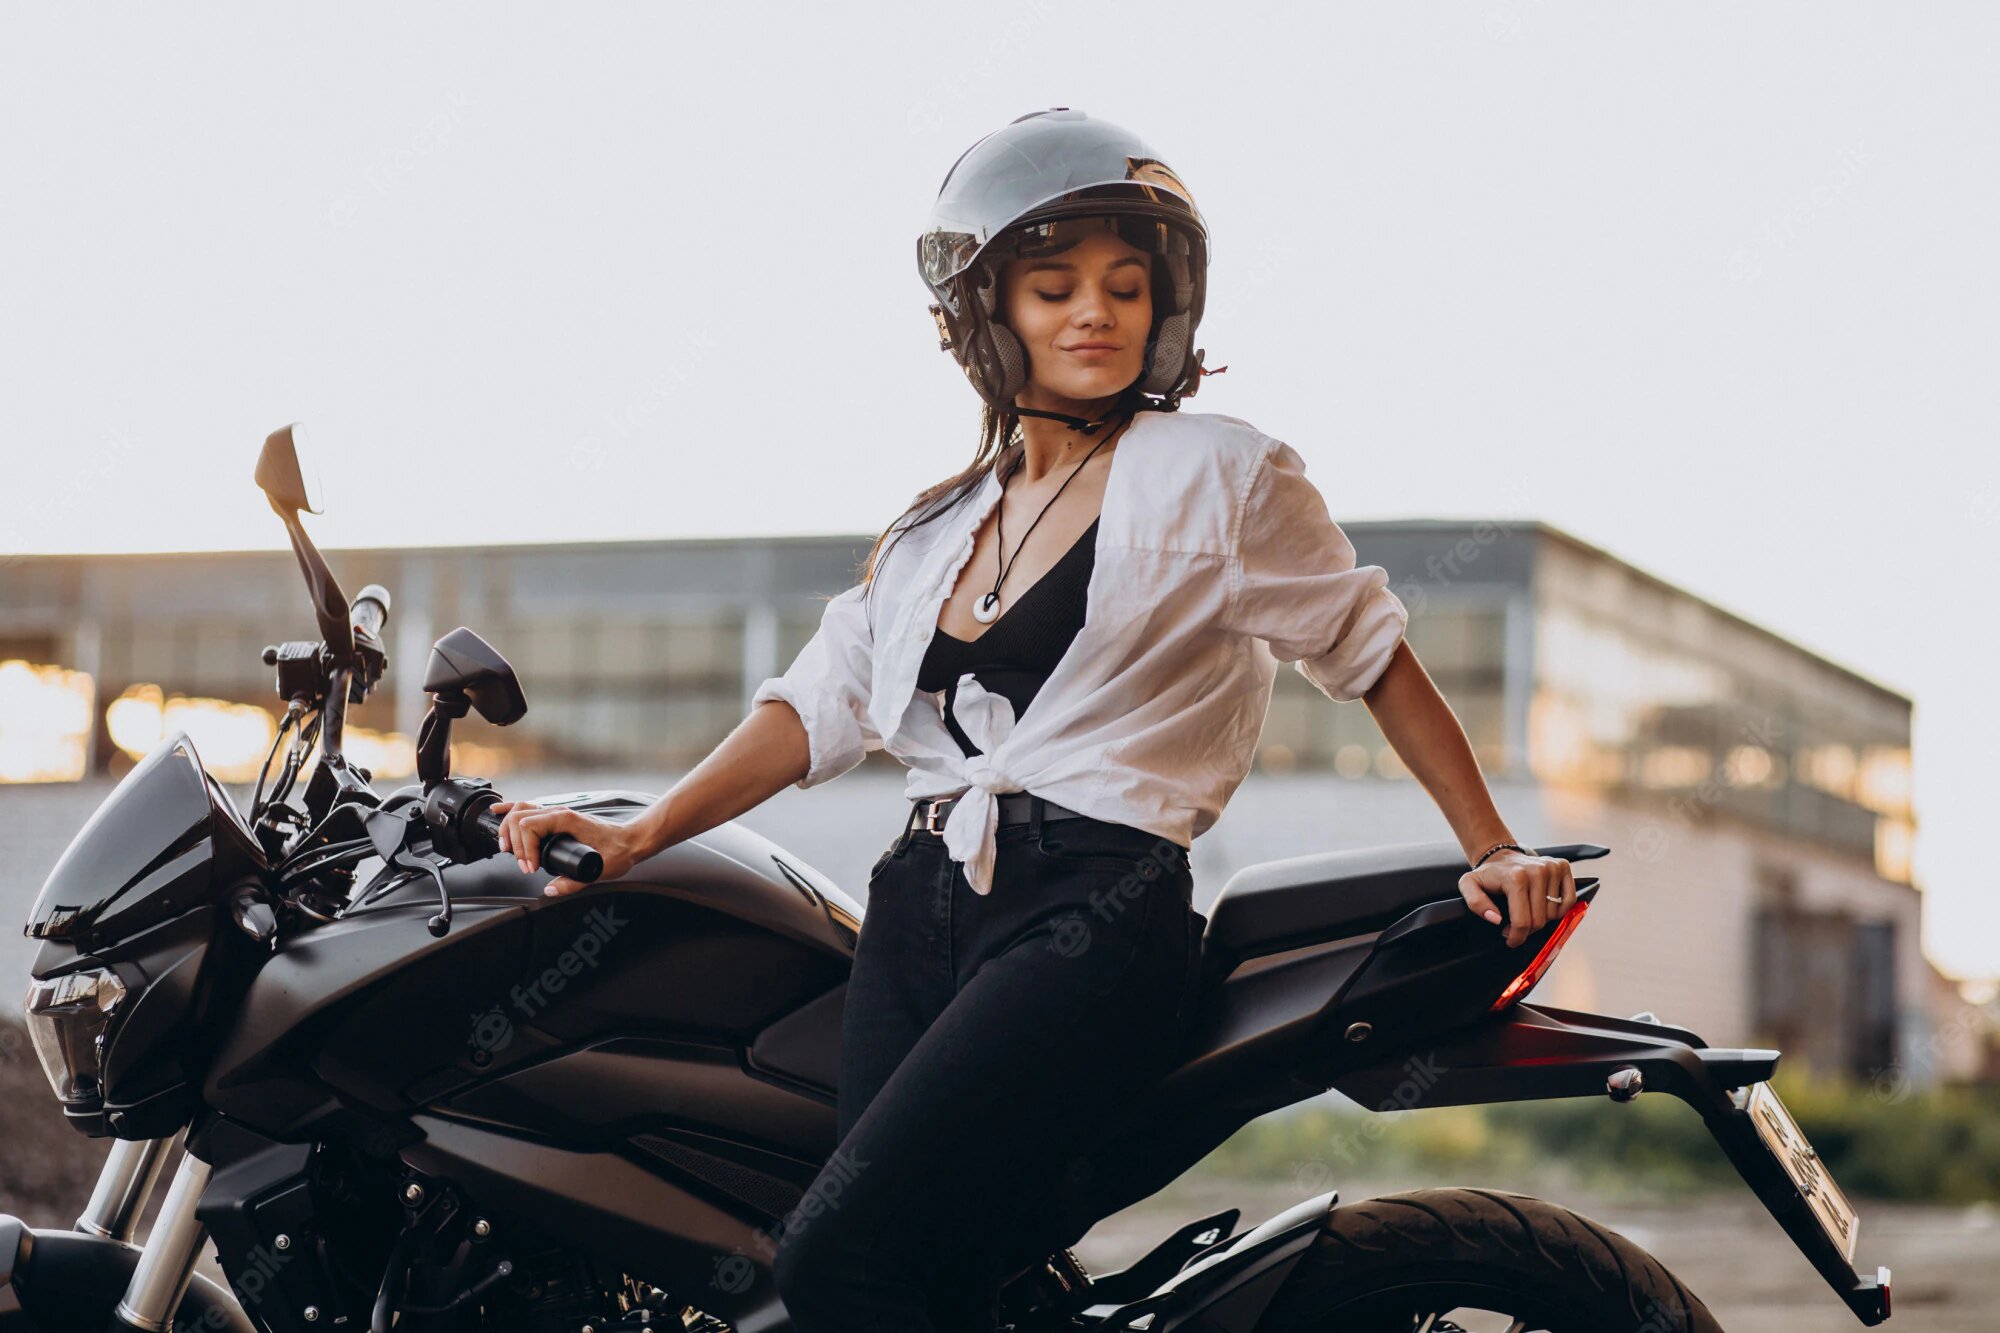 Mejores cascos de motos para mujer ¡Los más originales! - Galgo